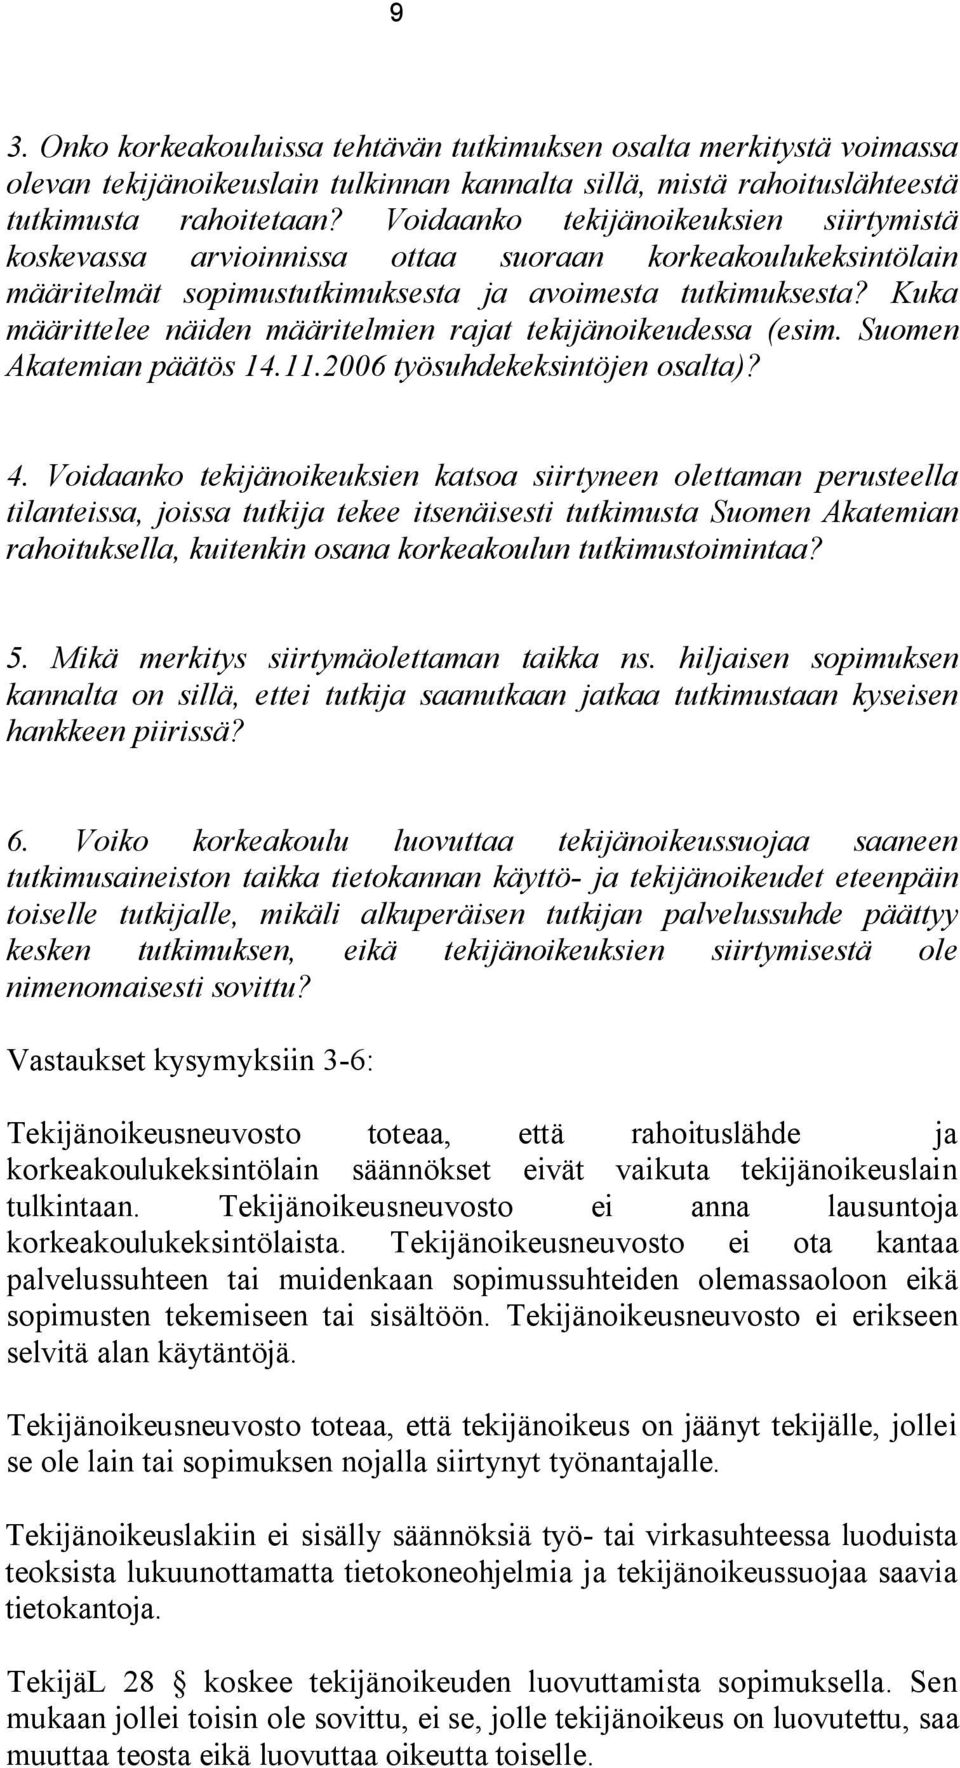 Kuka määrittelee näiden määritelmien rajat tekijänoikeudessa (esim. Suomen Akatemian päätös 14.11.2006 työsuhdekeksintöjen osalta)? 4.